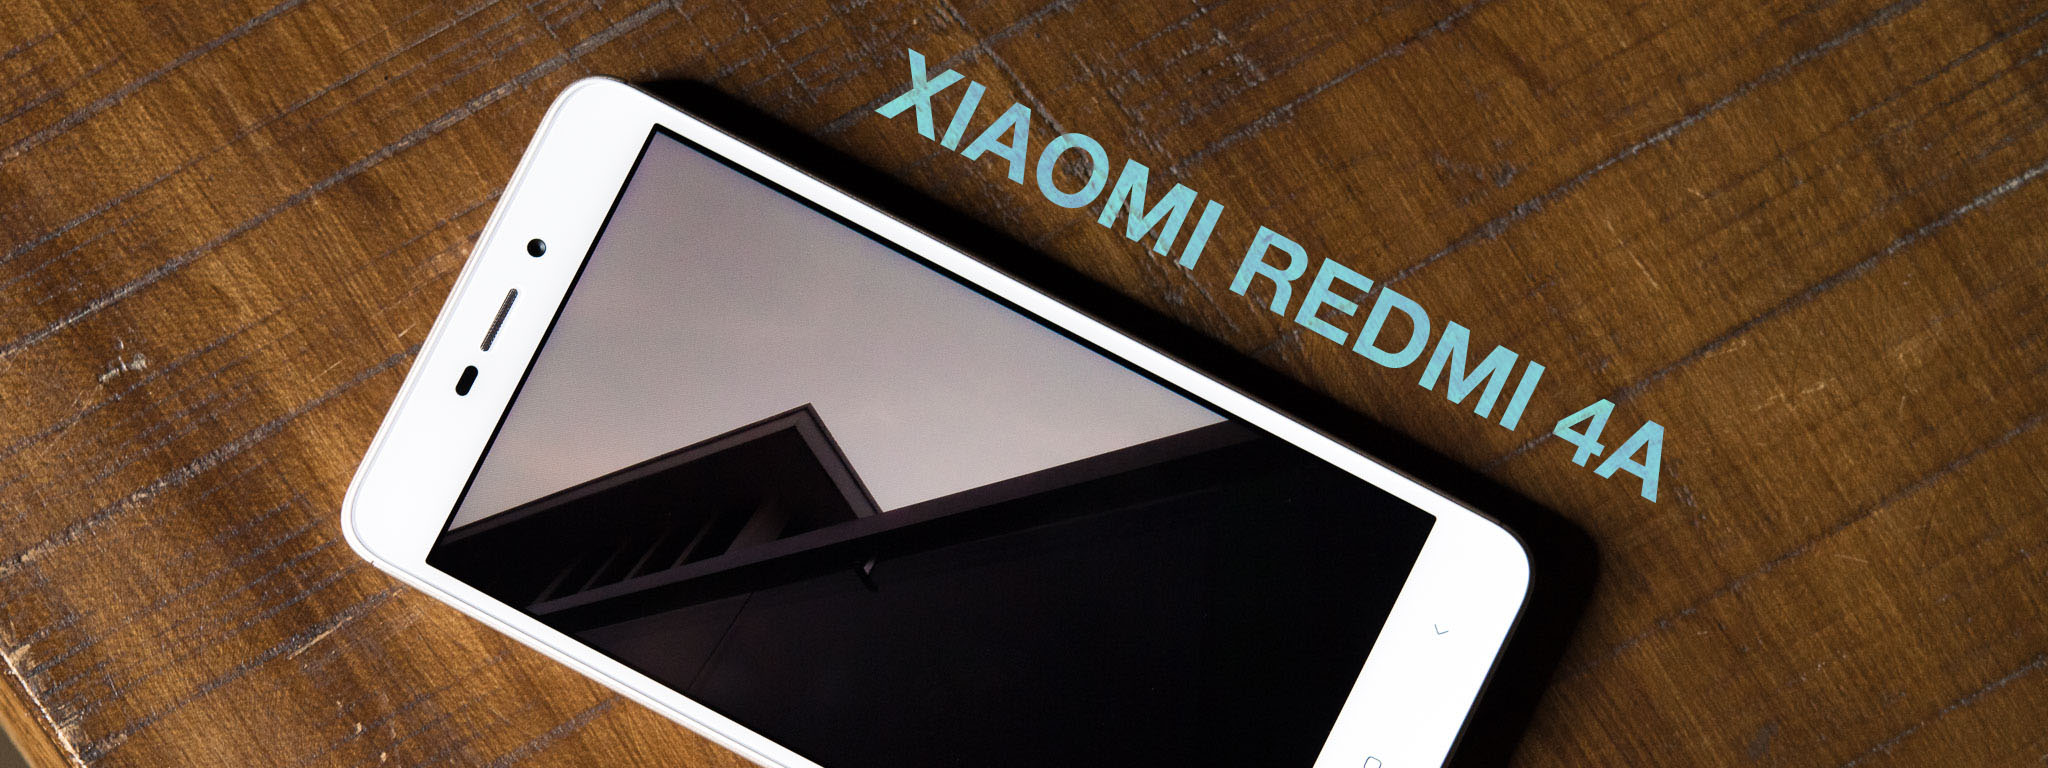 Xiaomi Redmi 4A chính hãng giá 2.7 triệu có đáng mua?